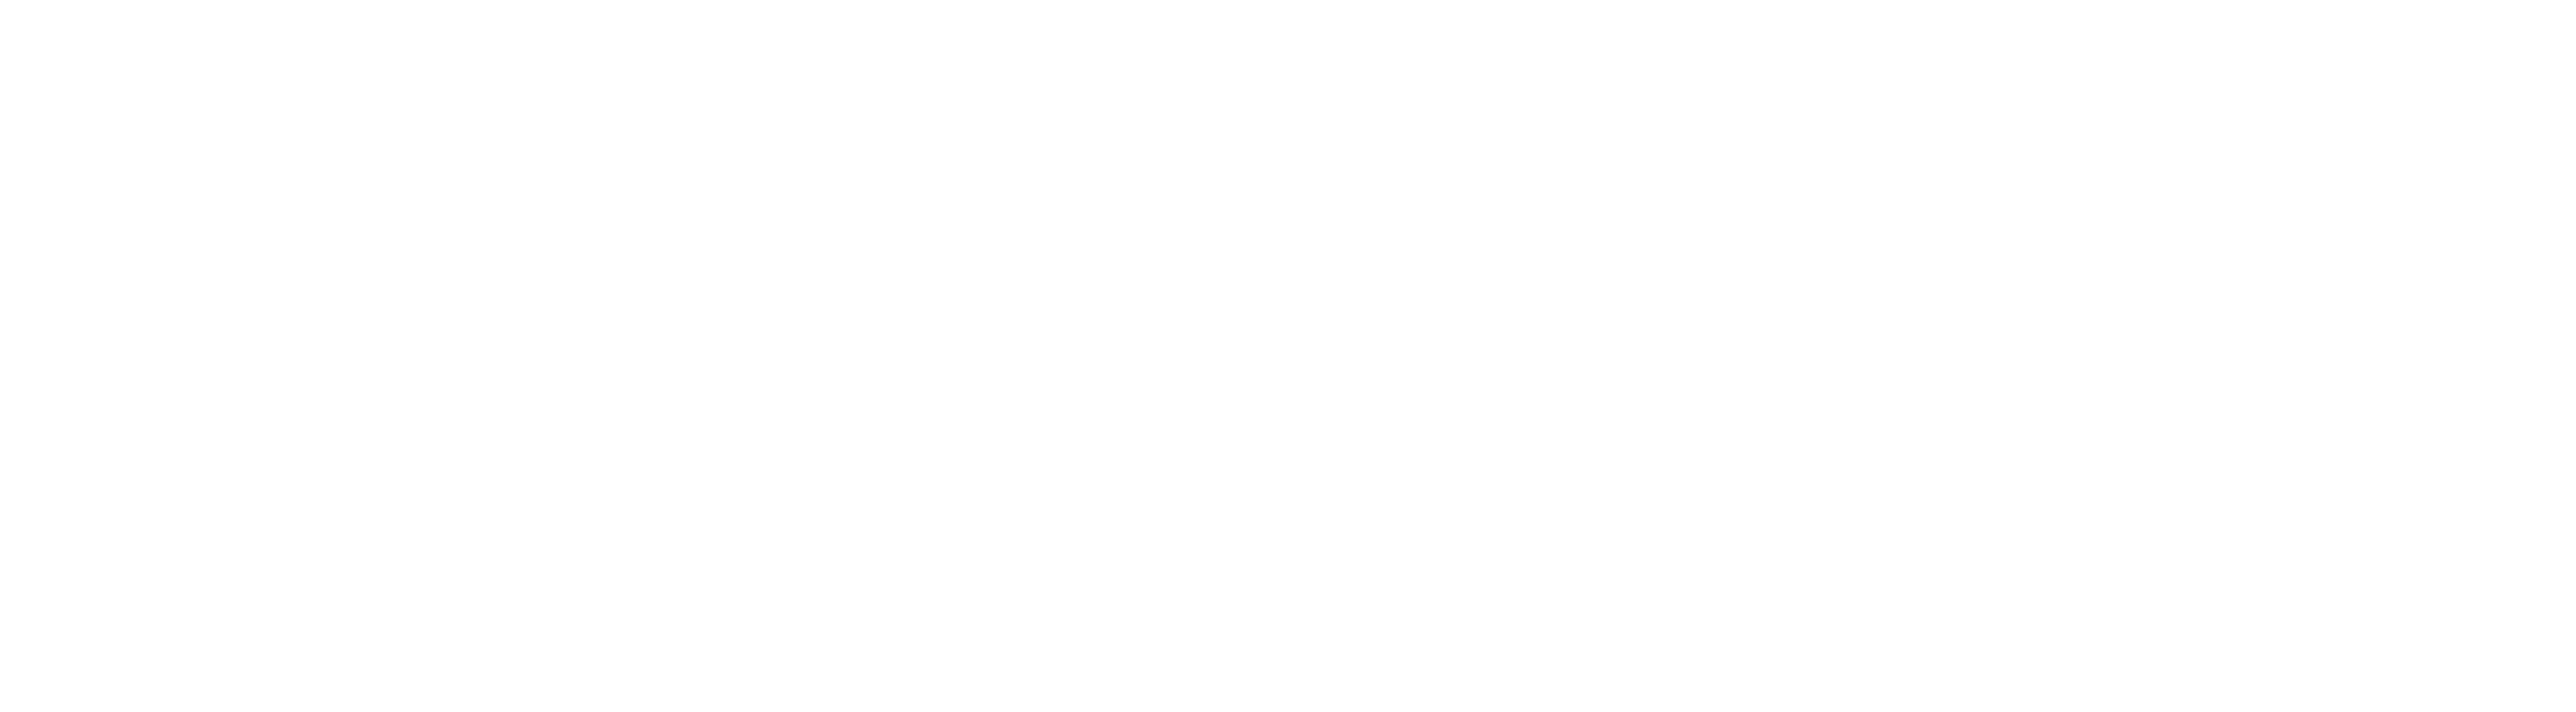 Best Greenland & Iceland Cruises 2023 | Celebrity Cruises